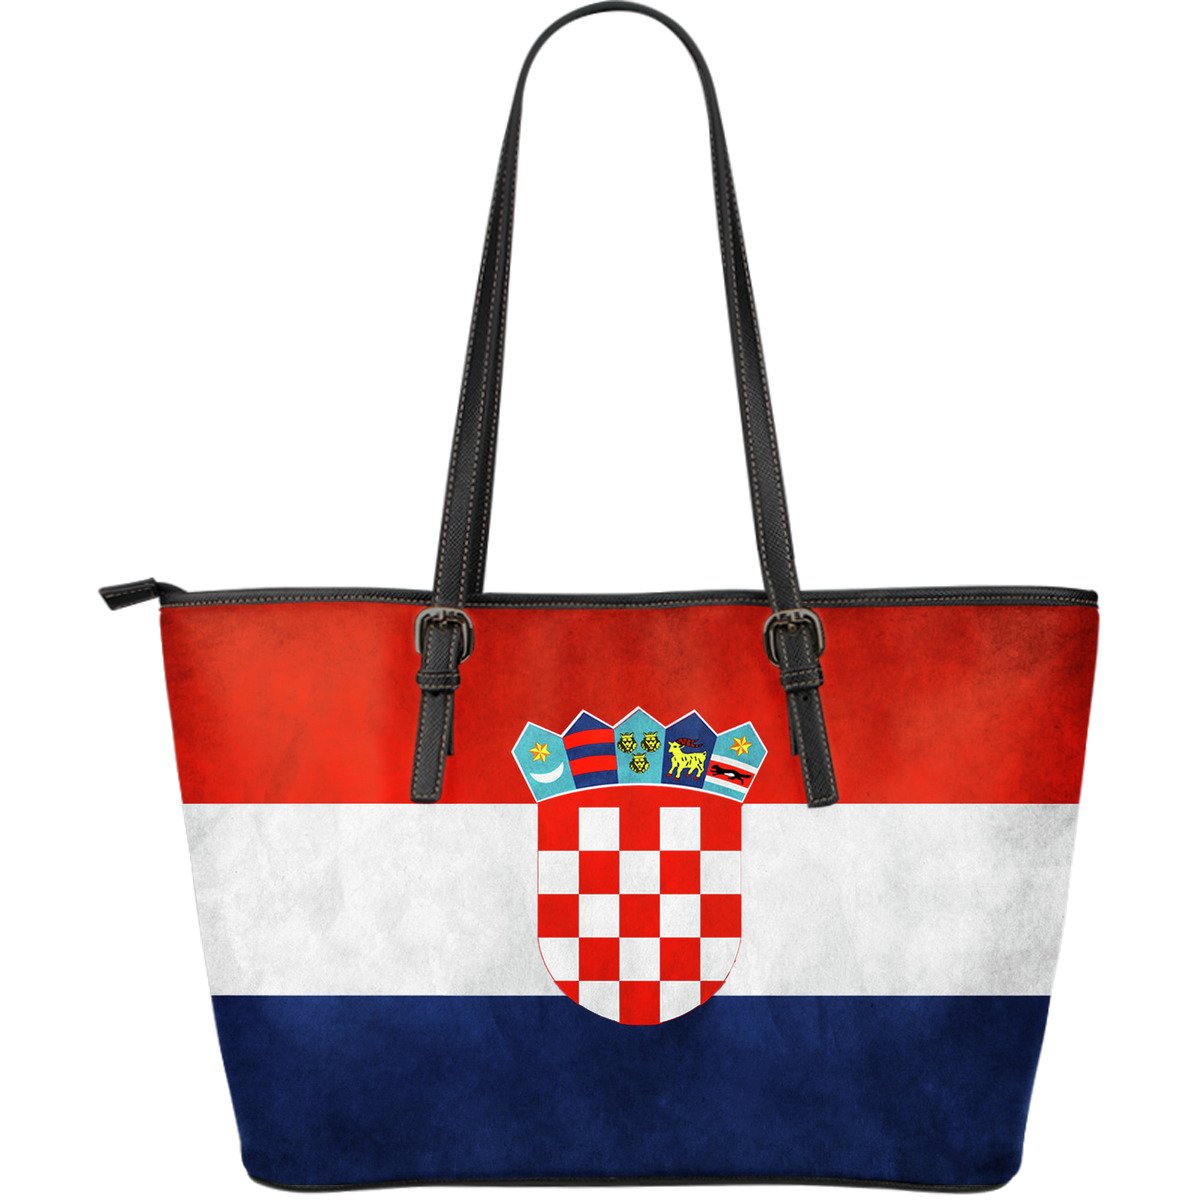 croatia-bag-croatia-flag-leather-tote